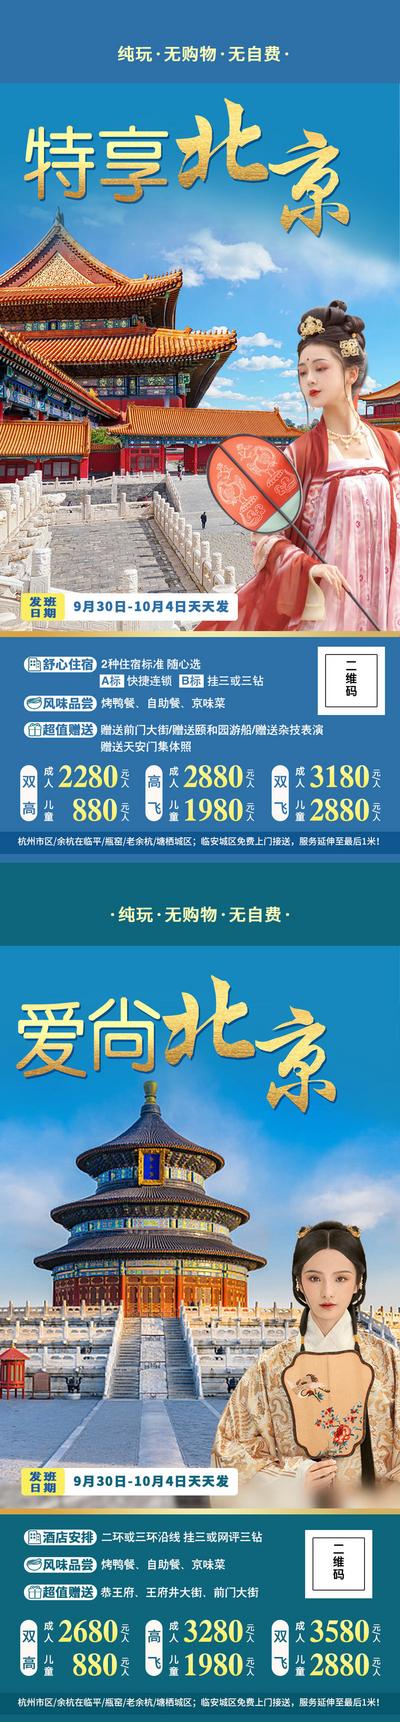 【南门网】海报 旅游 北京 人物 故宫 景点 风景 蓝金